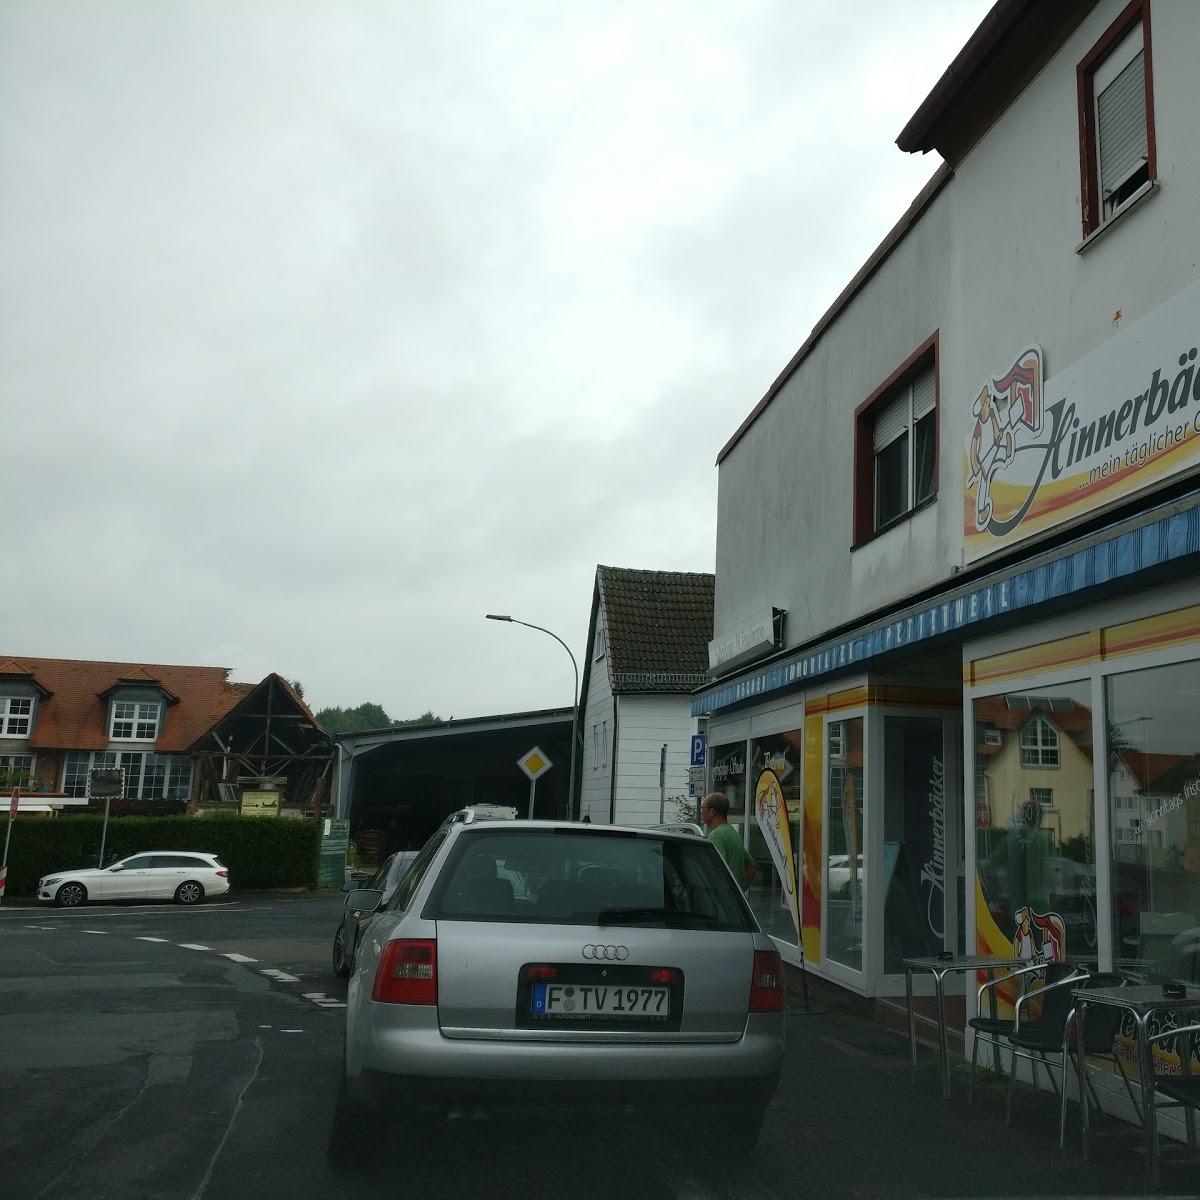 Restaurant "Hinnerbäcker GmbH & Co KG" in Karben